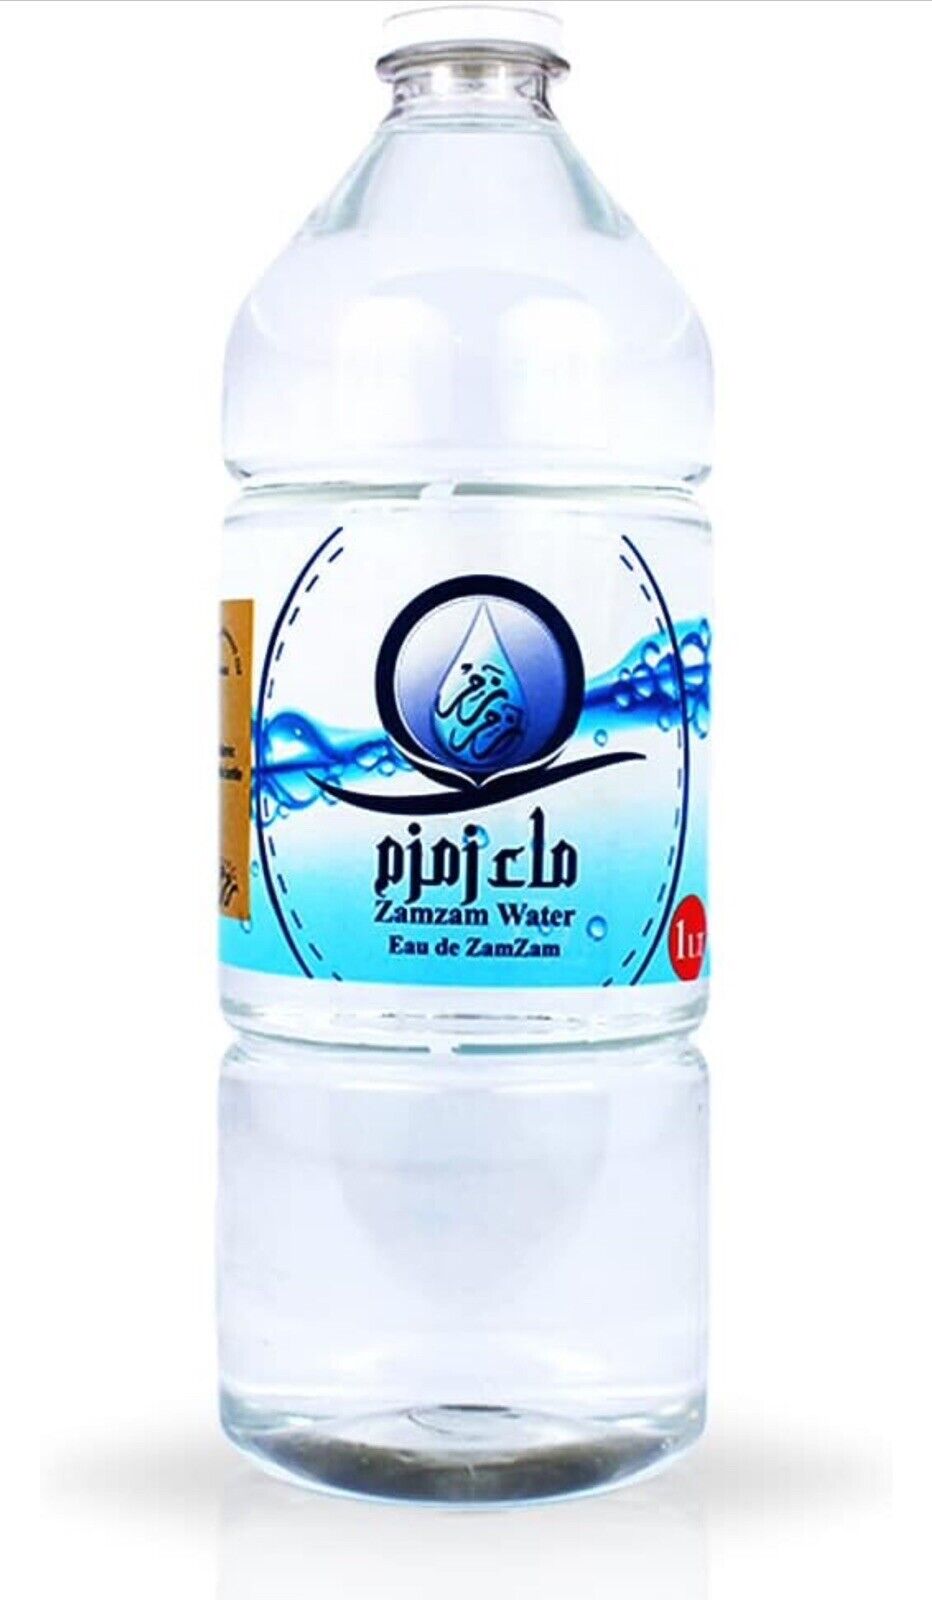 Zam Zam Water 15 Bottles ,1 Litre Each Zamzam Water From Makkah Shipped FromUSA